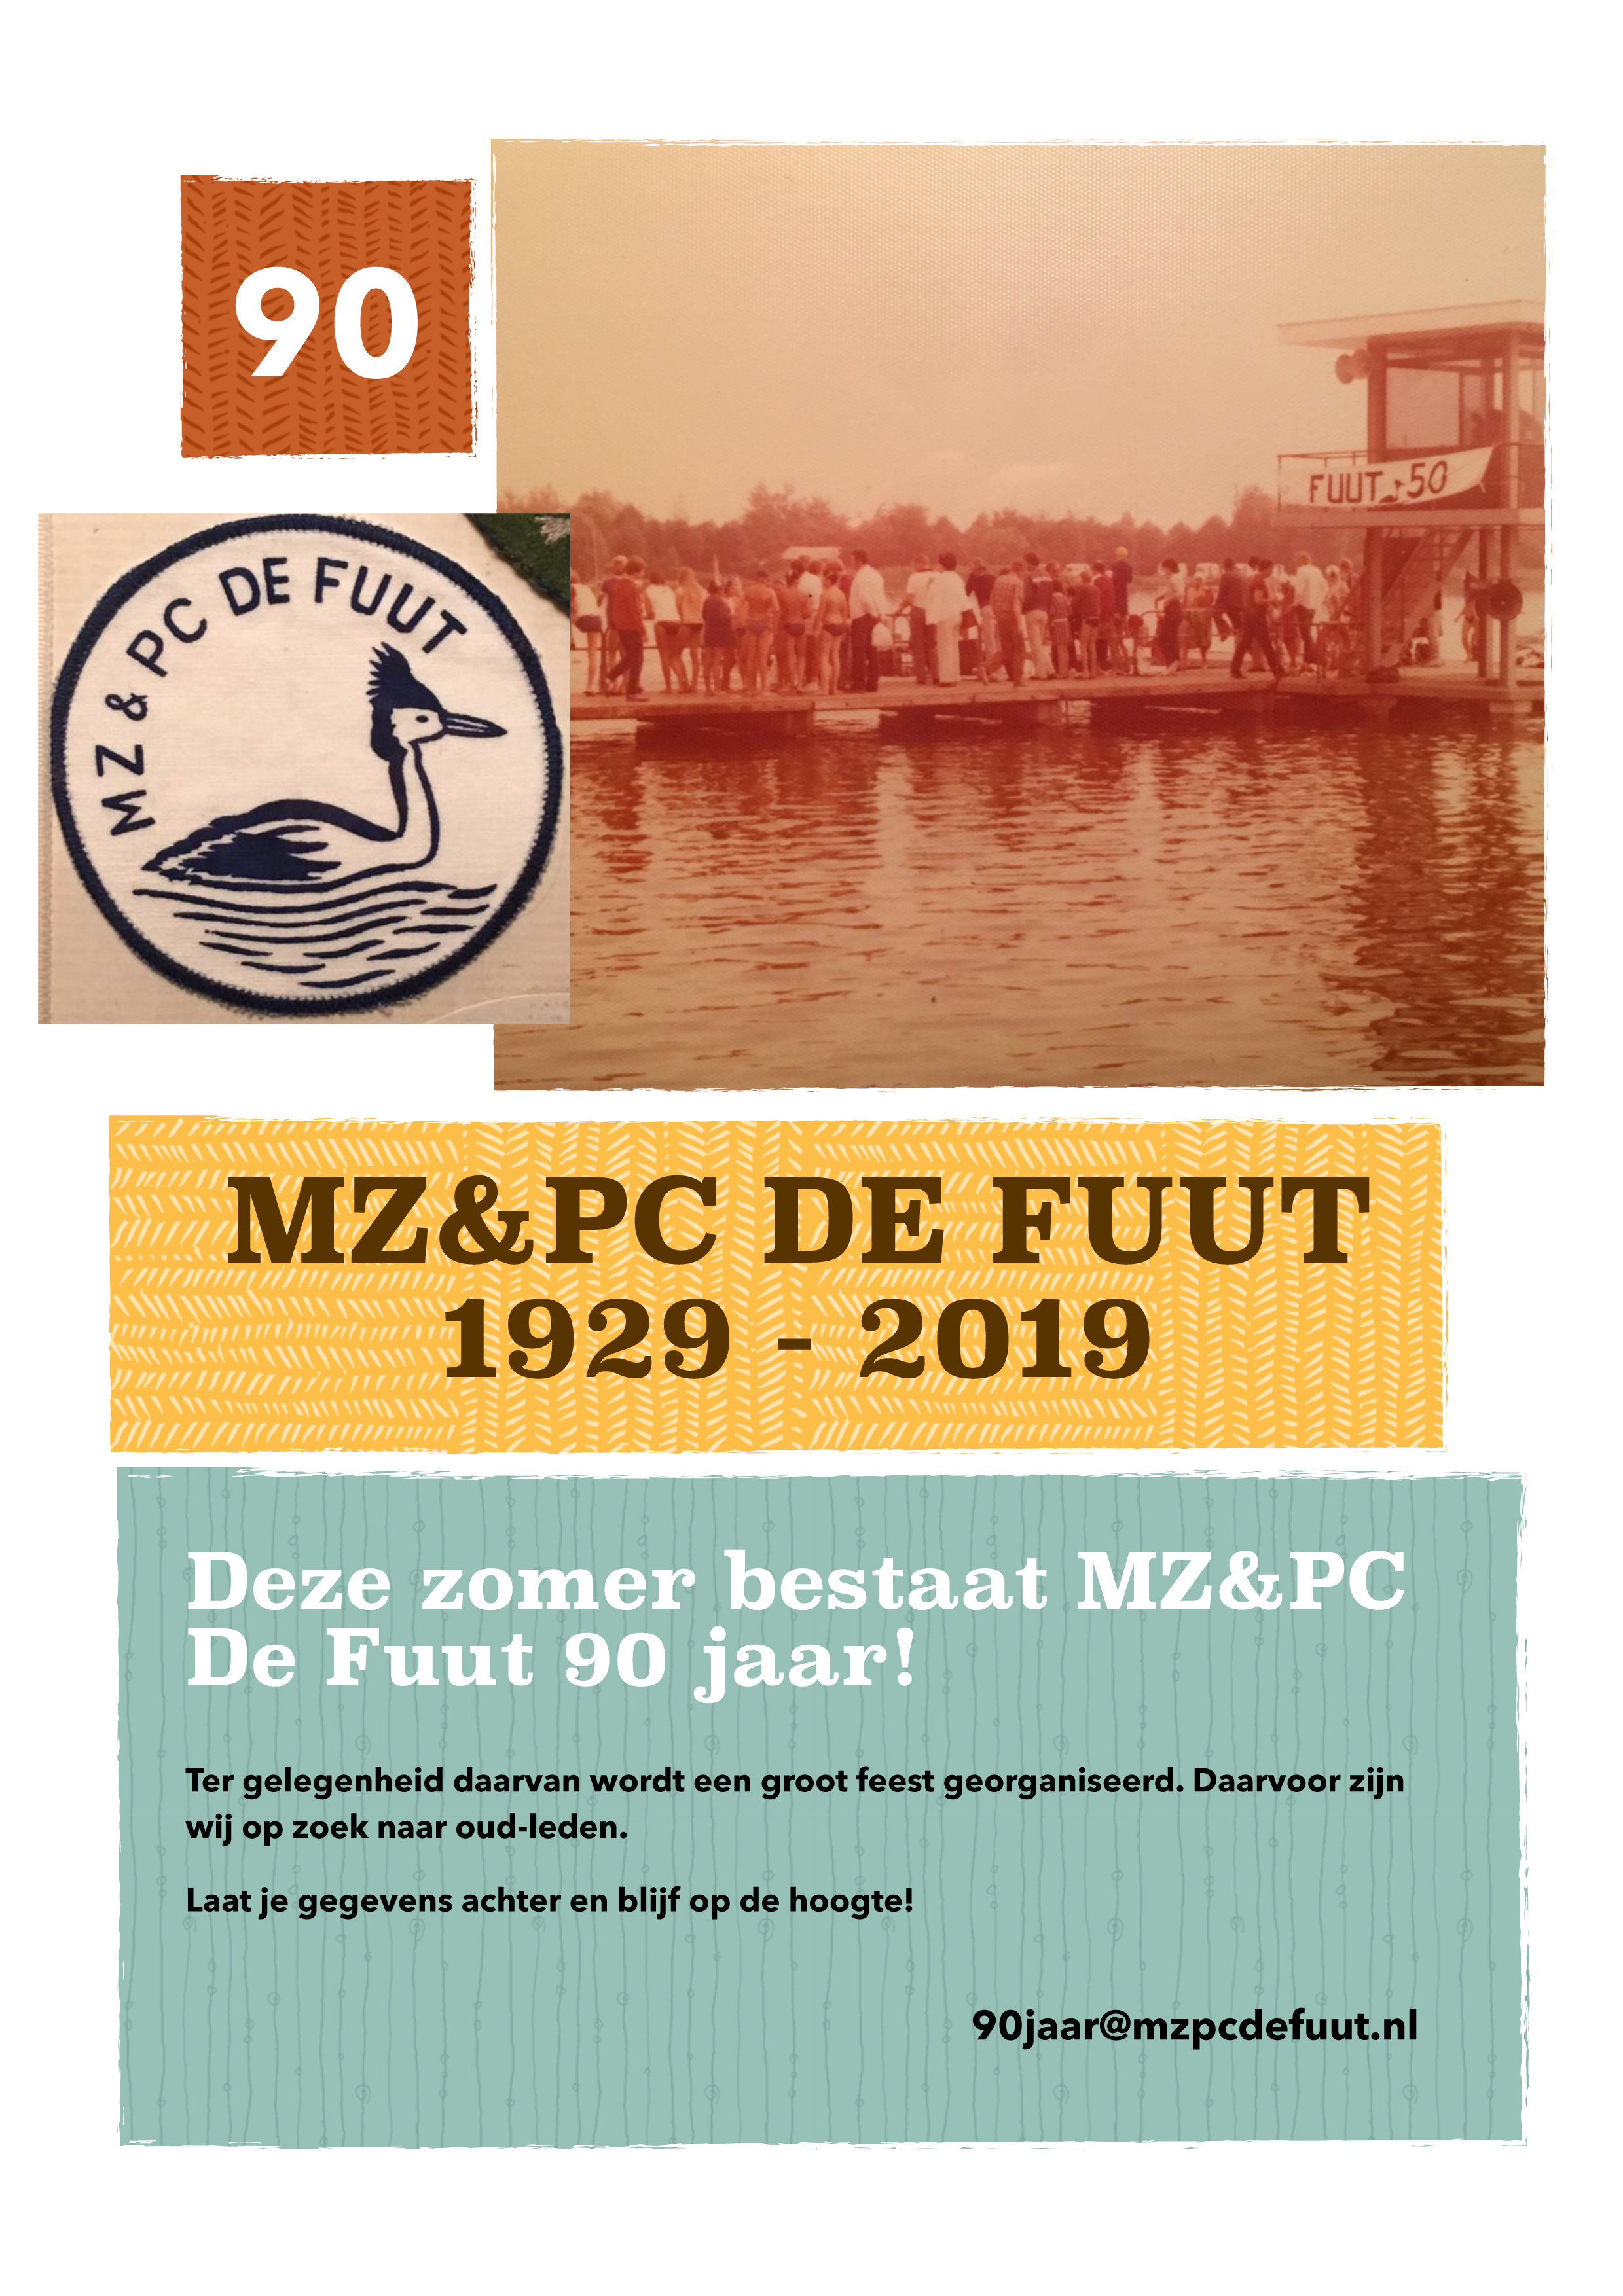 90 jaar MZ&PC de Fuut